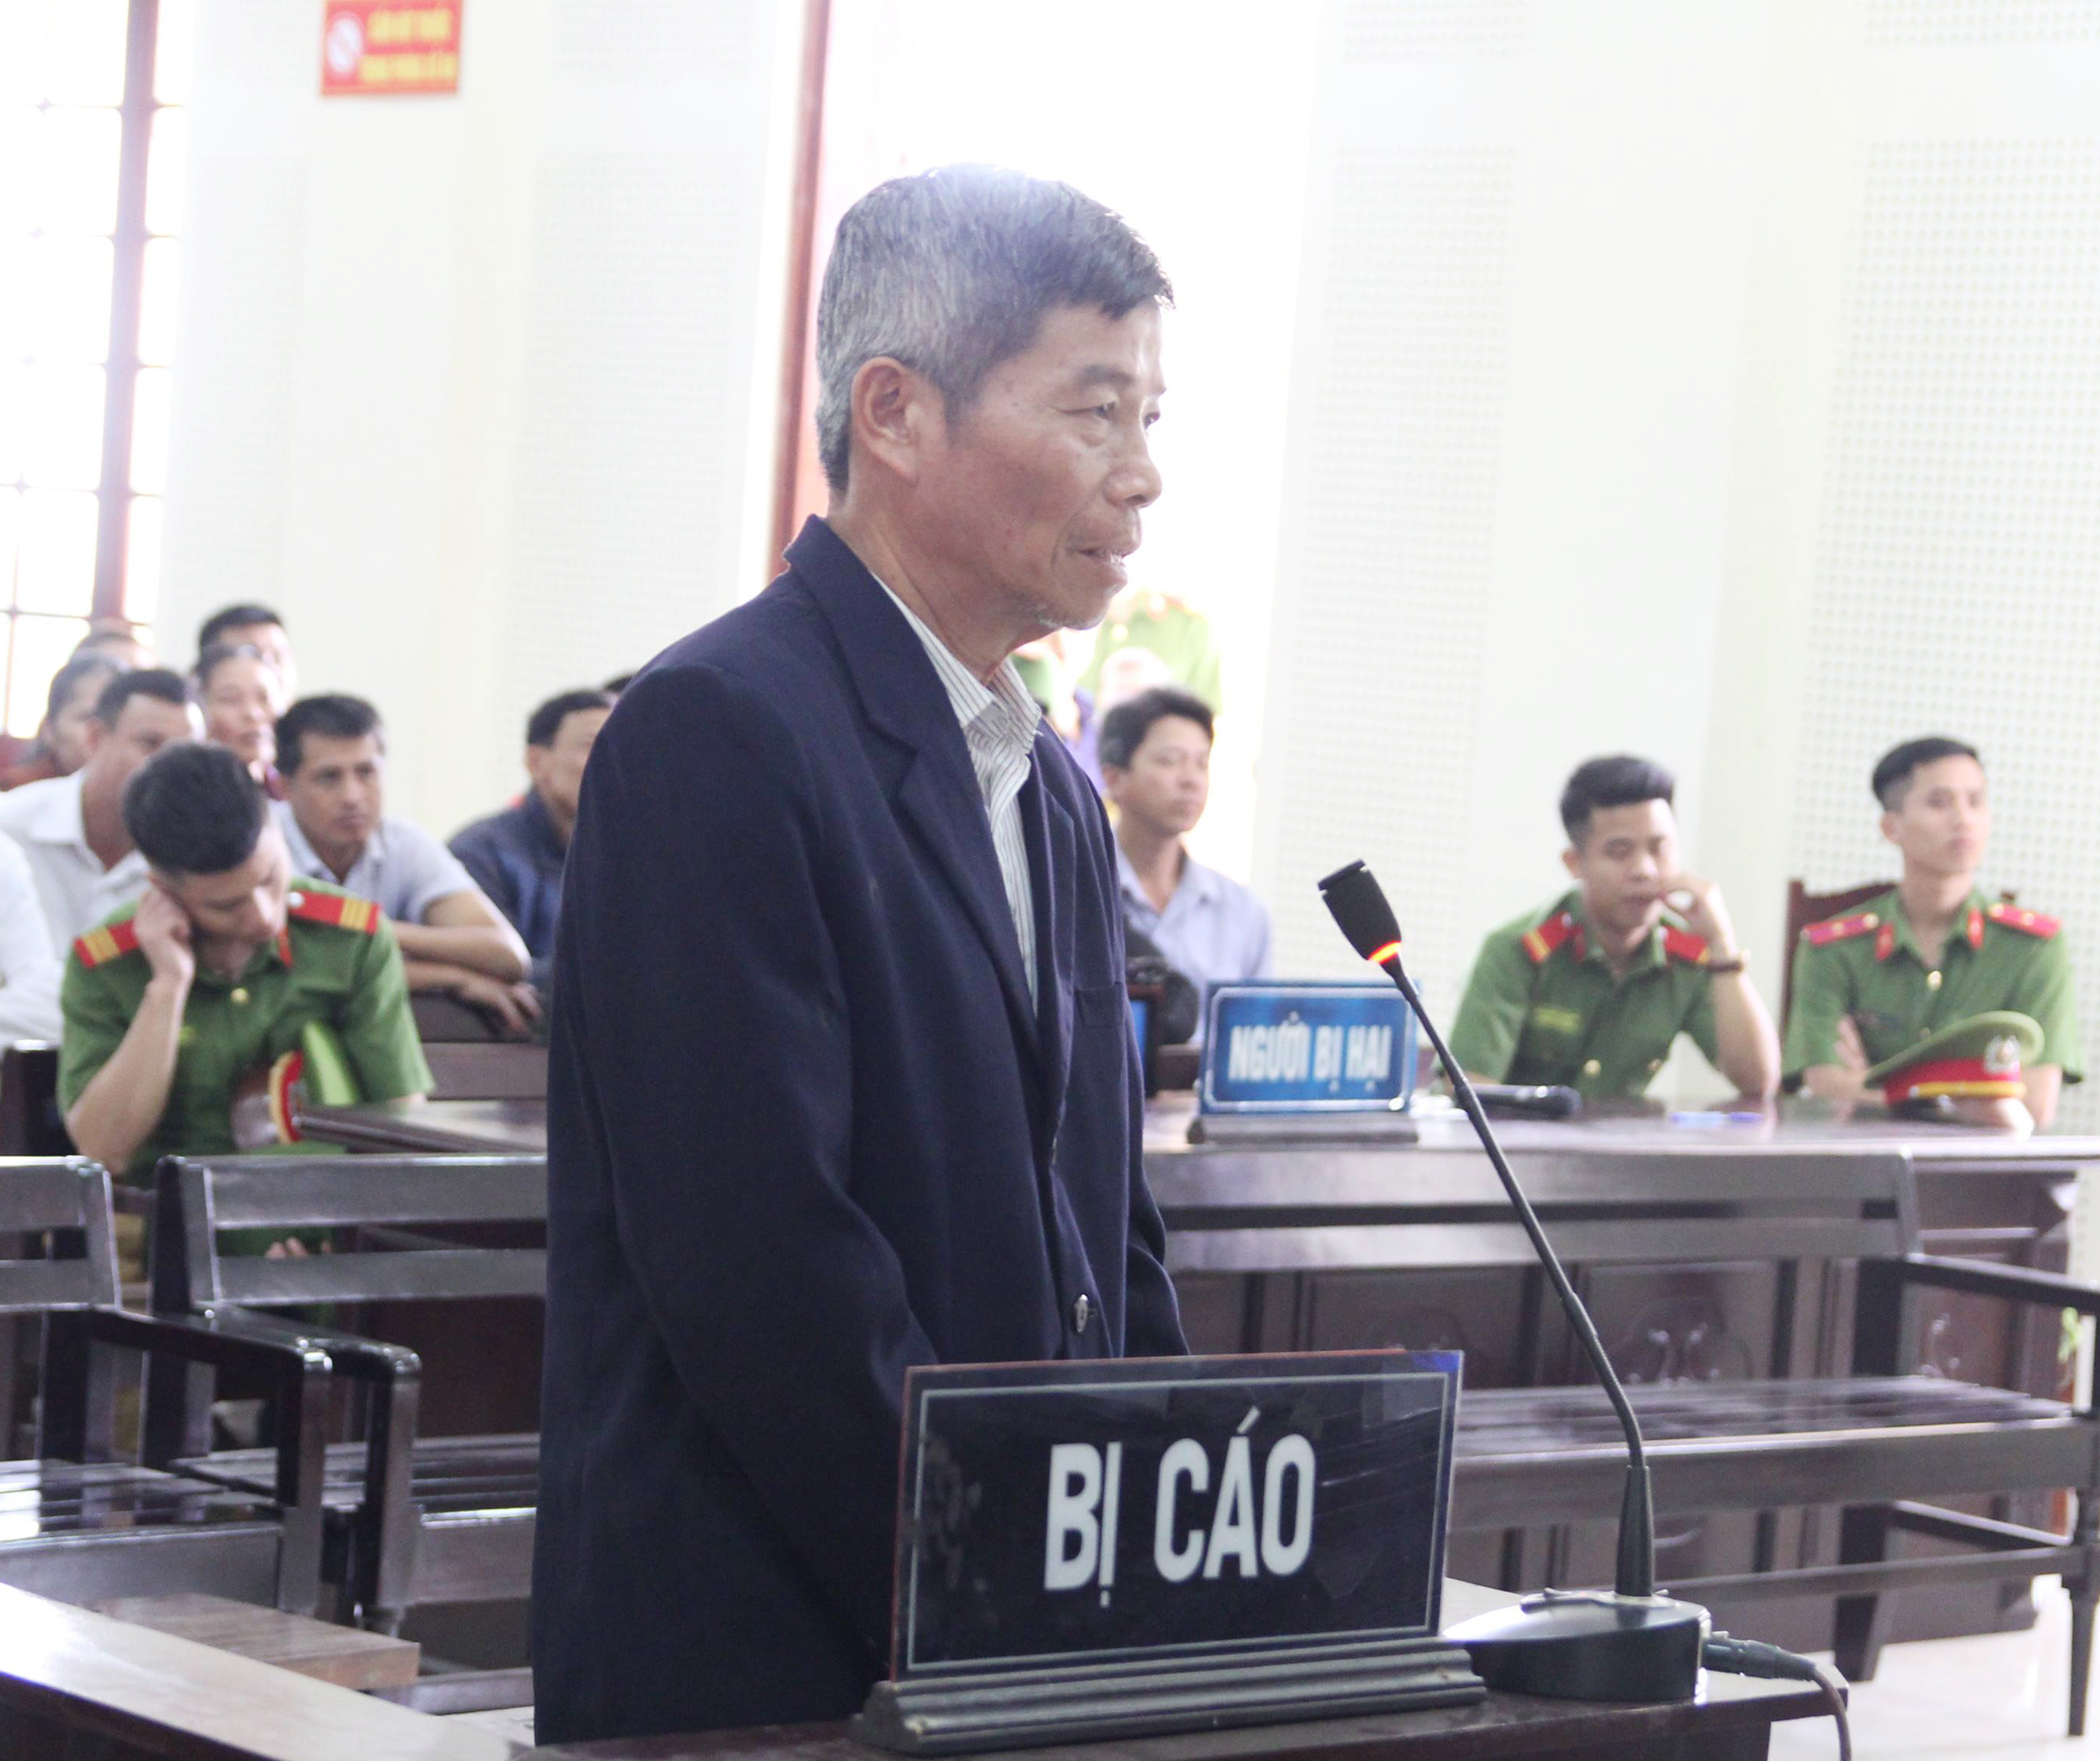 Bị cáo Nguyễn Doãn Vinh phải hầu tòa vì tội lỗi của những đứa con. Ảnh: Phương Thảo